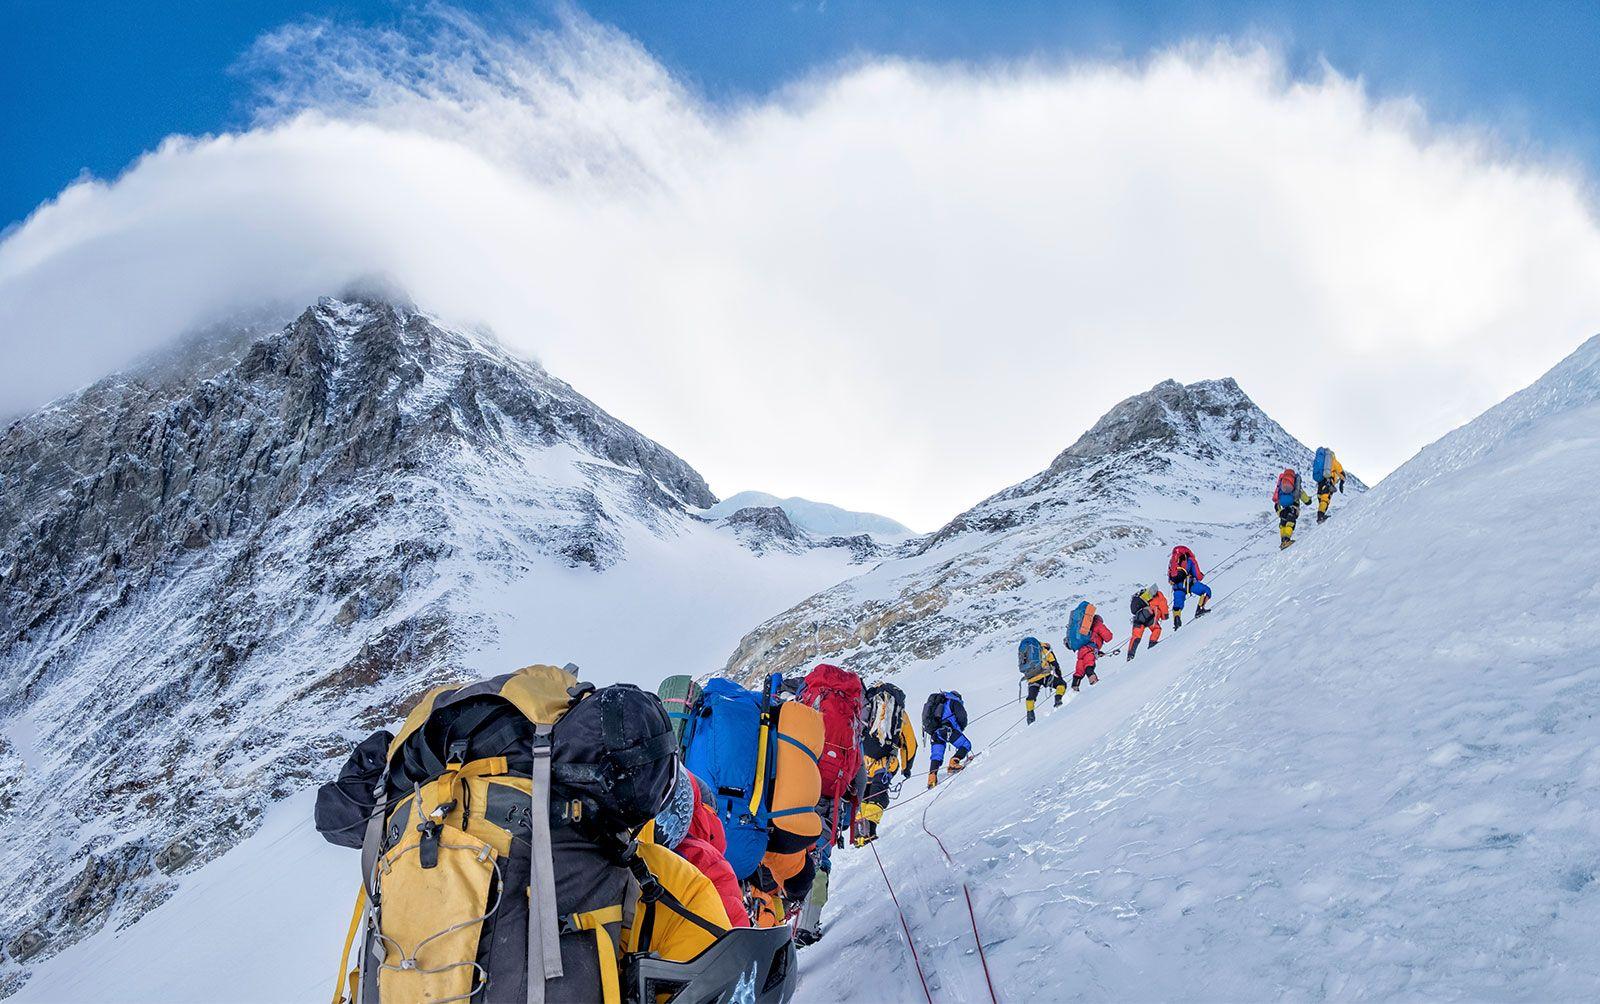 https://cdn.britannica.com/39/76239-050-DE5FCF36/Climbers-side-Nepali-Mount-Everest.jpg